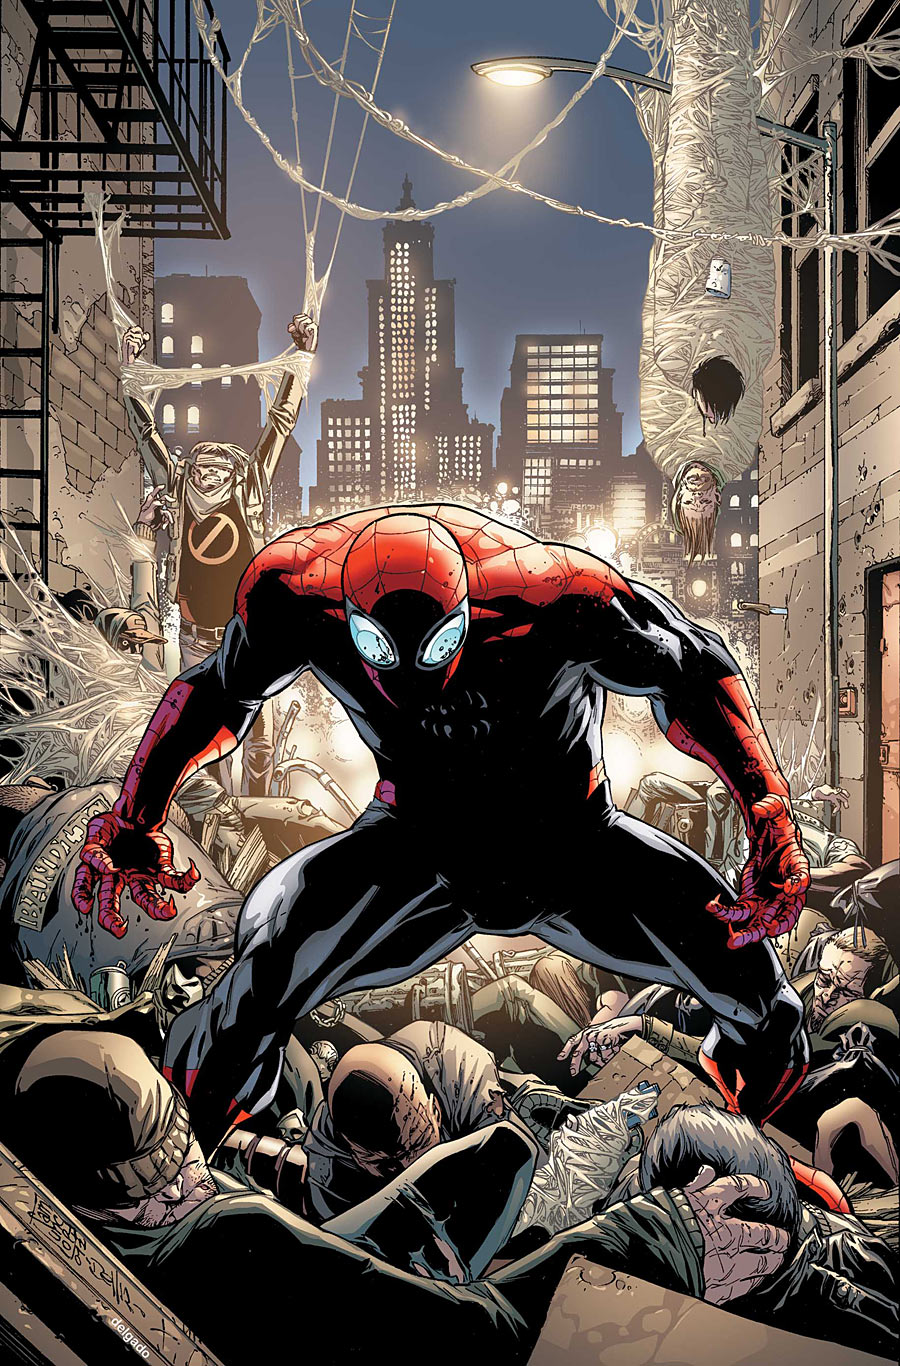 Infinite Spider-Man 13.4: The Superior Spider-Man